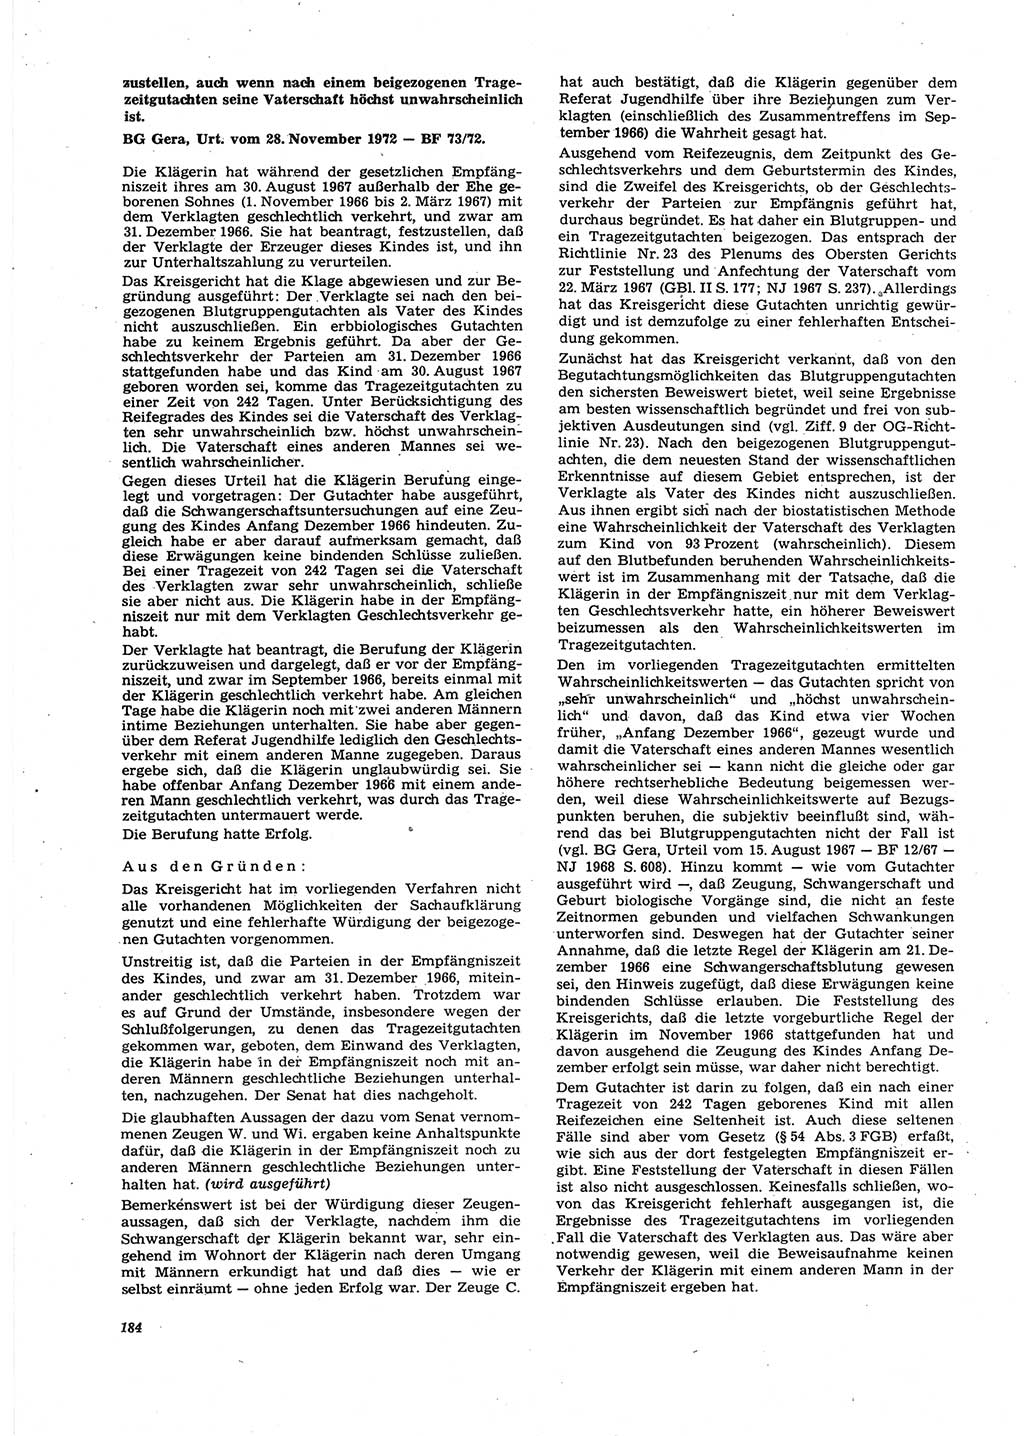 Neue Justiz (NJ), Zeitschrift für Recht und Rechtswissenschaft [Deutsche Demokratische Republik (DDR)], 27. Jahrgang 1973, Seite 184 (NJ DDR 1973, S. 184)